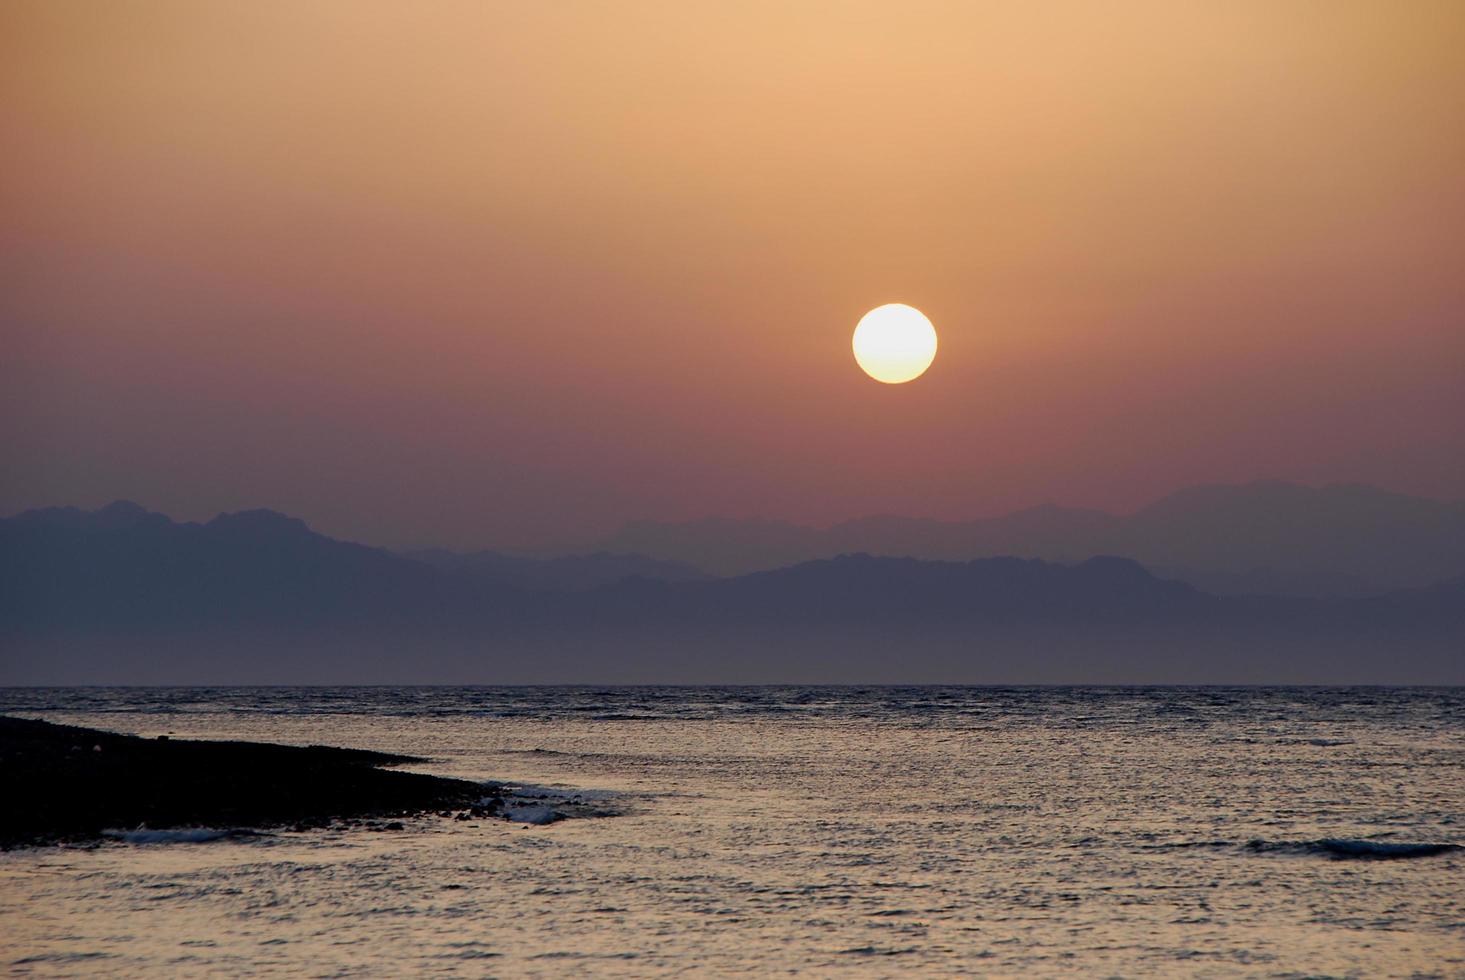 vredige glanzende zee bij zonsopgang in de zomer foto